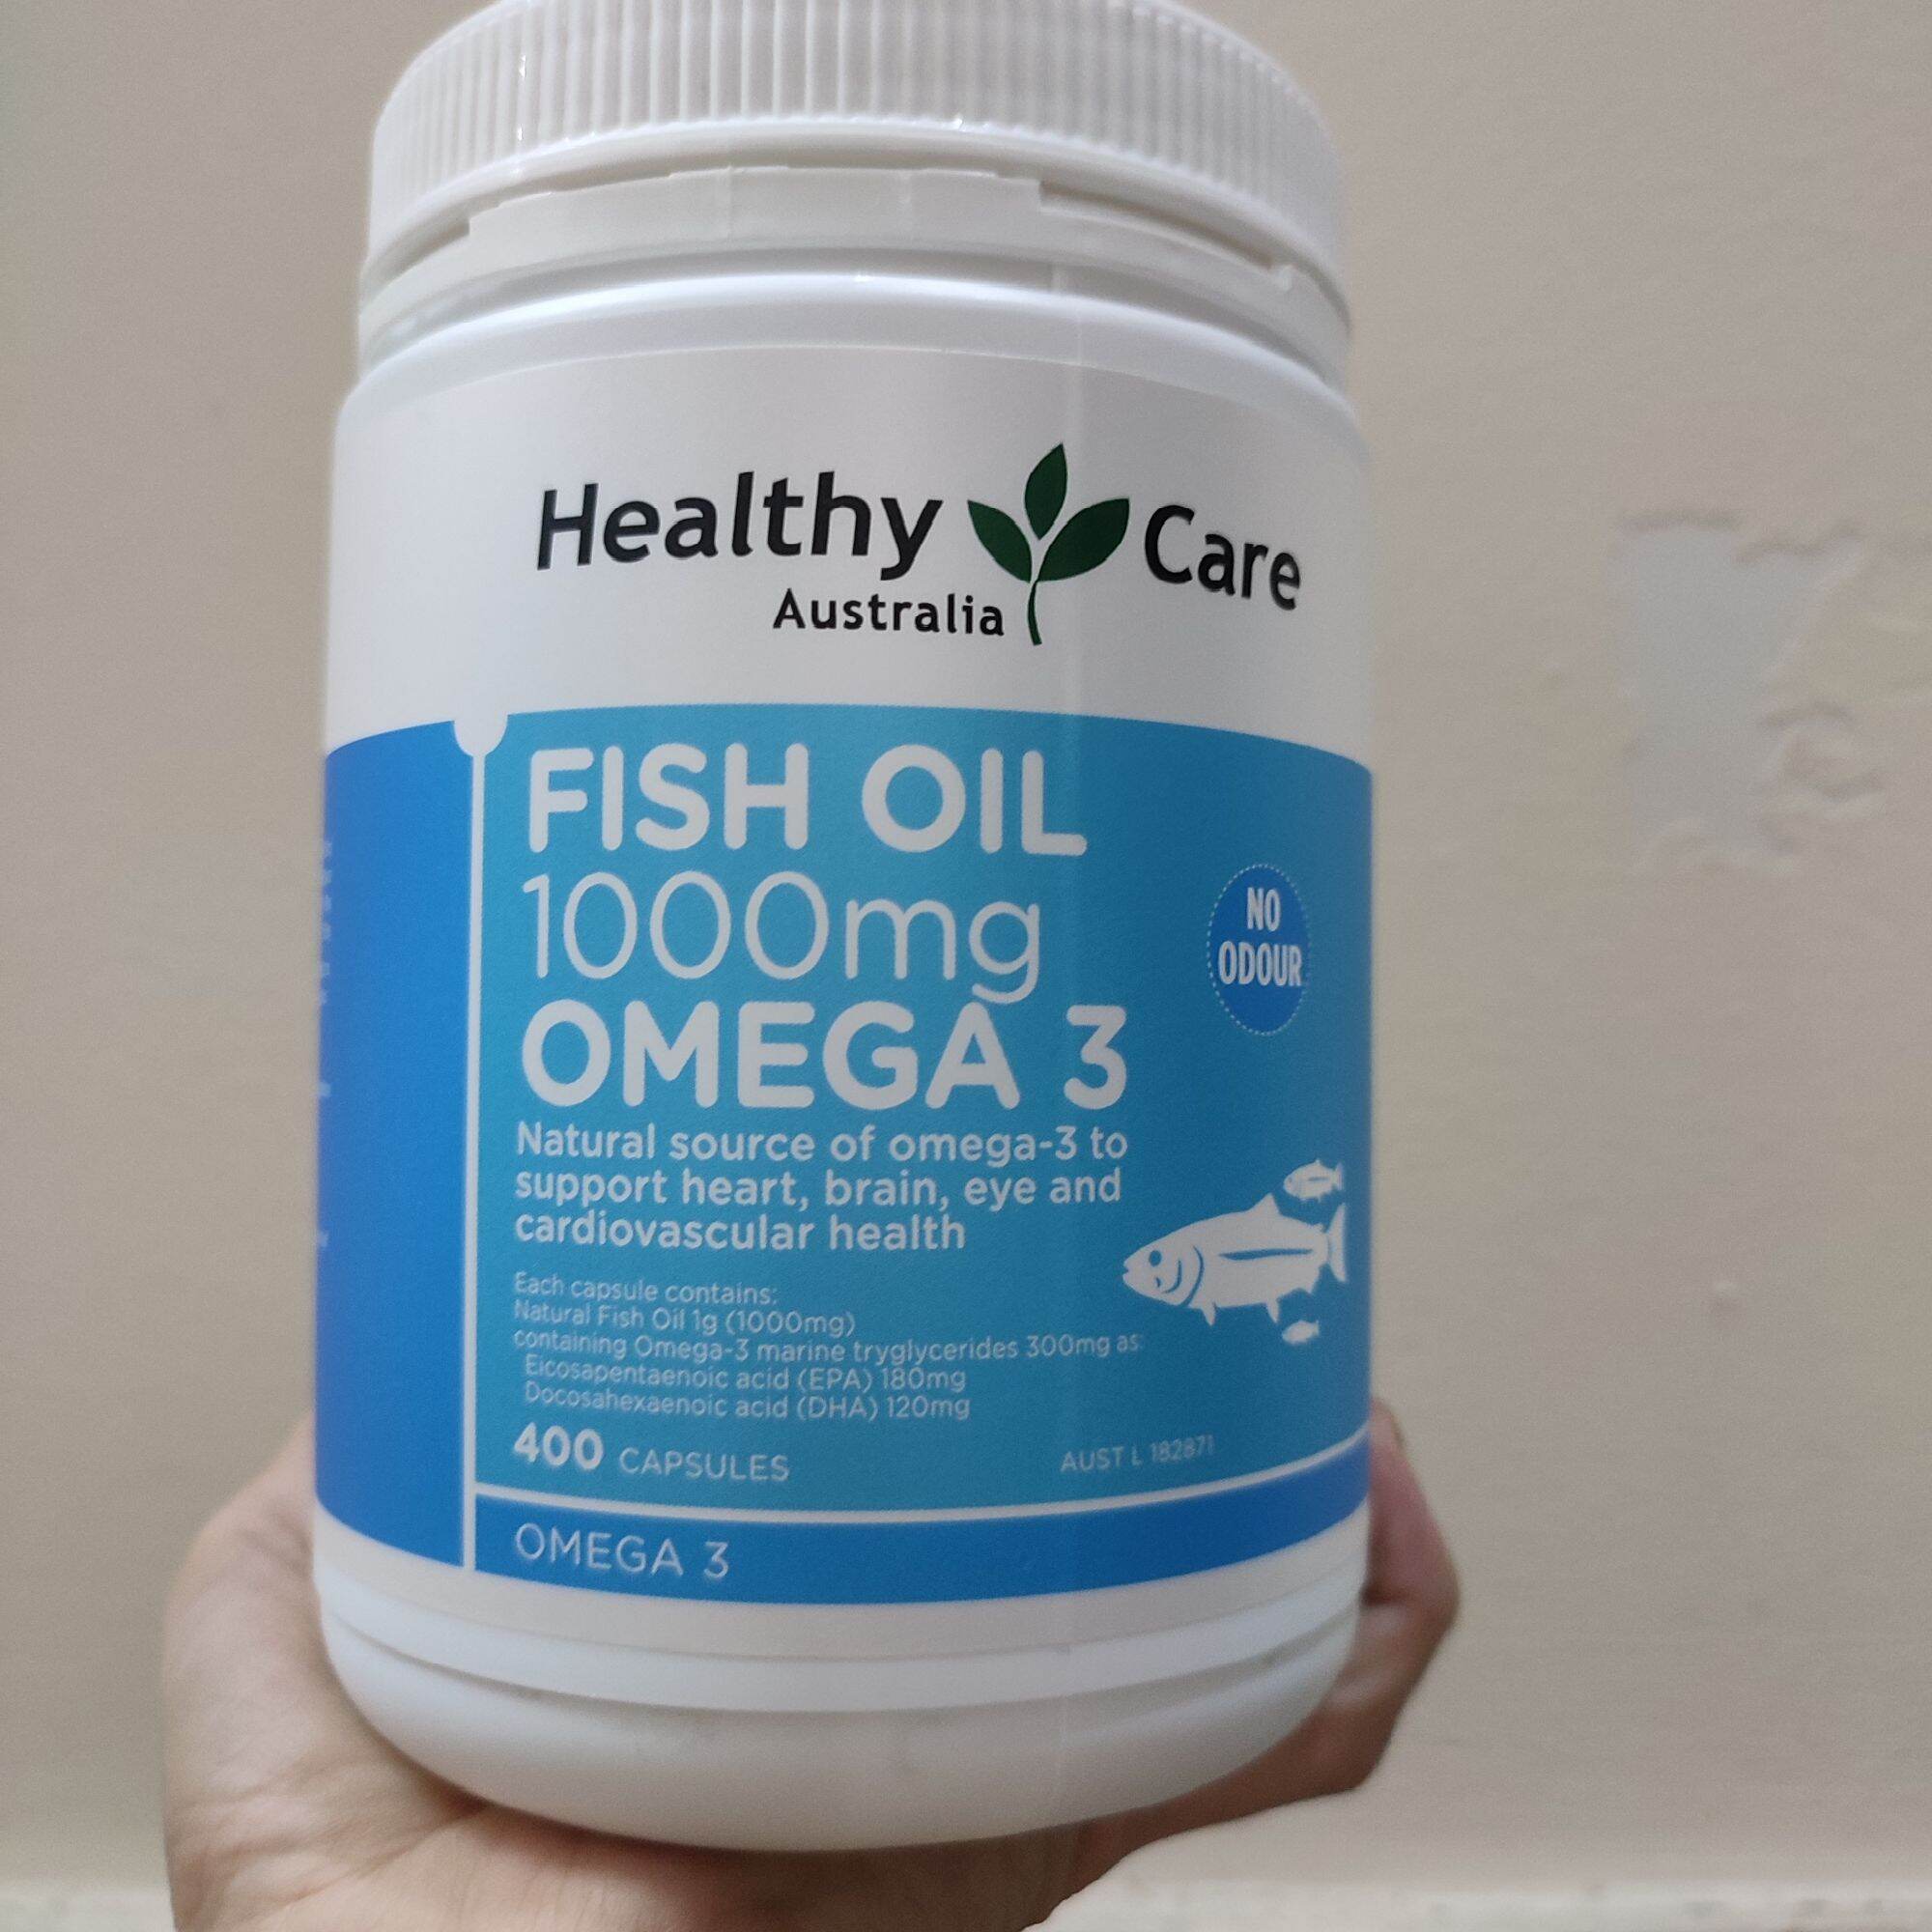 Healthy Care Fish Oil 1000mg Omega 3 - 400 viên của Úc